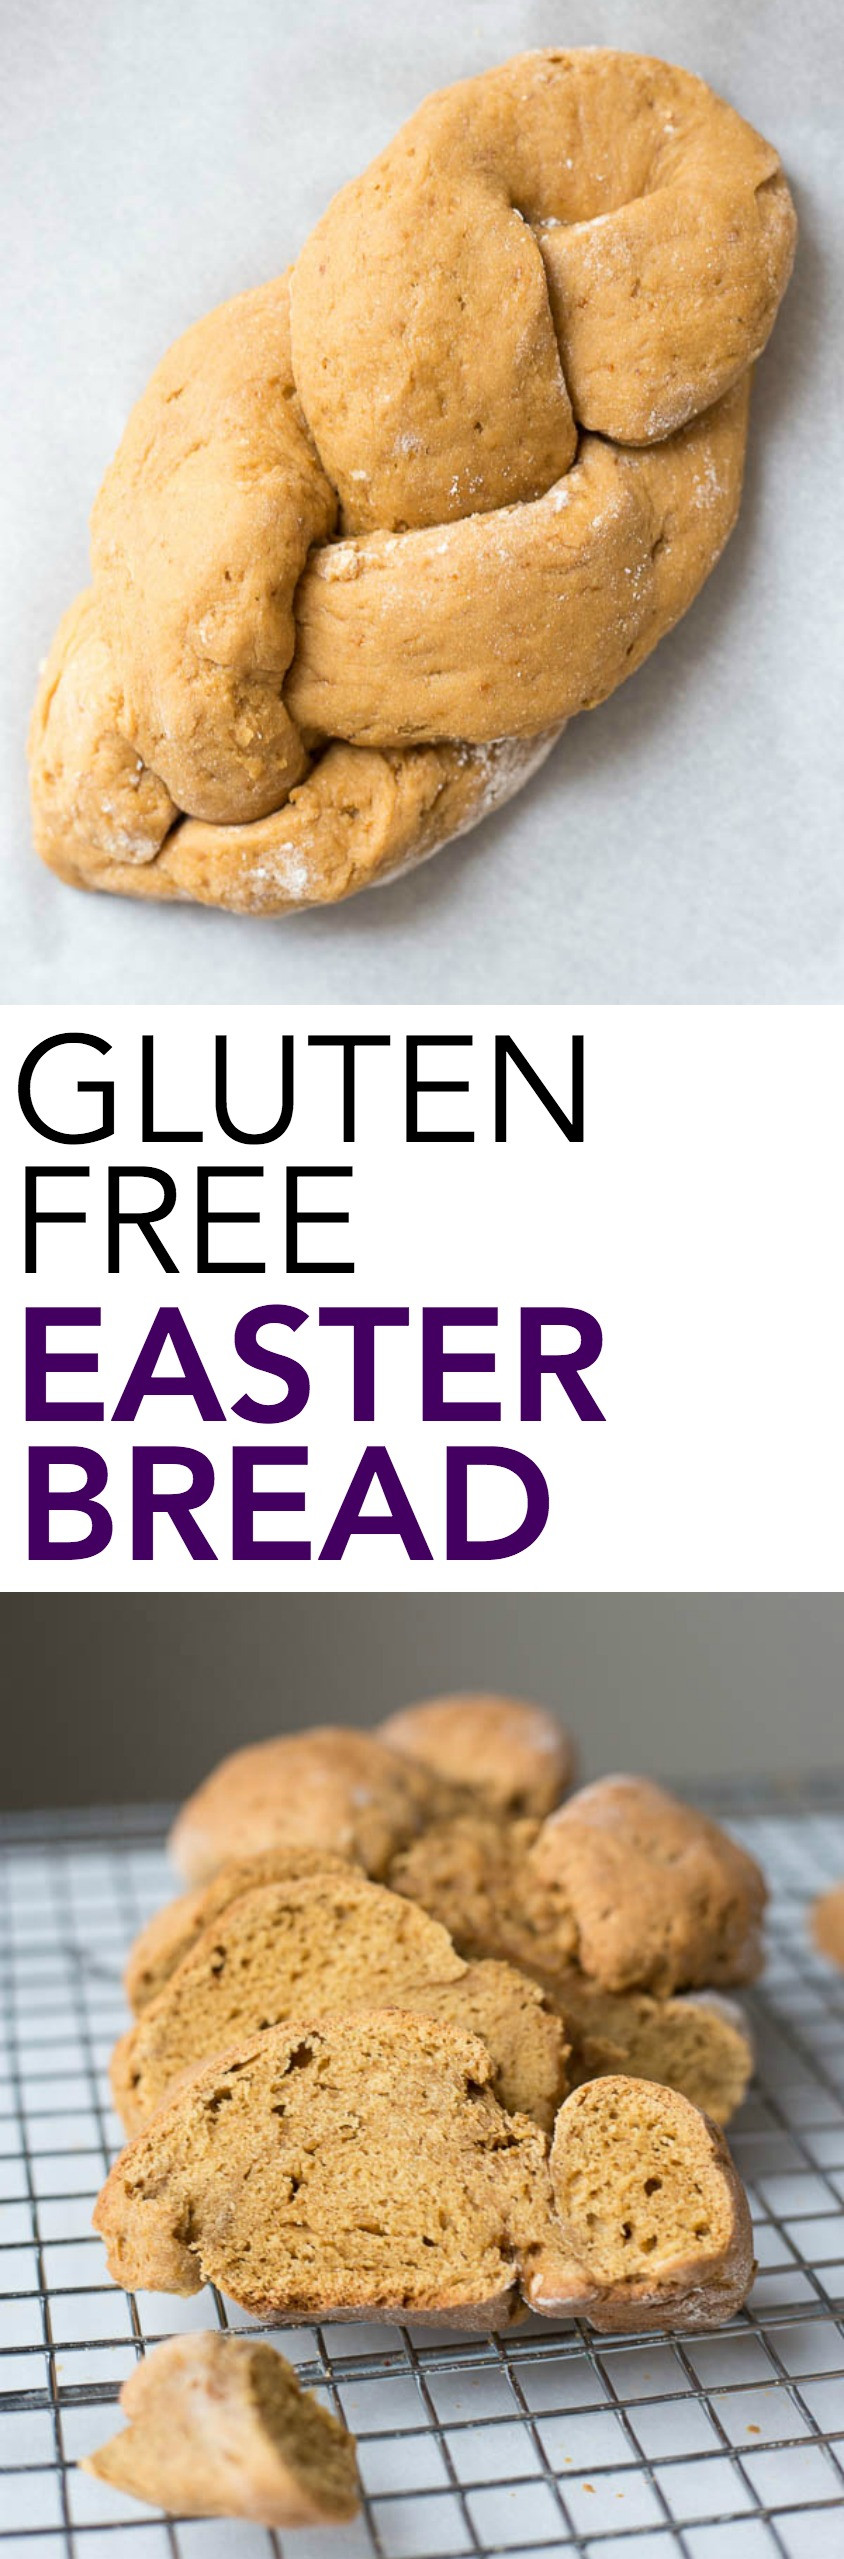 Gluten Free Easter Recipes
 Gluten Free Easter Bread Fooduzzi